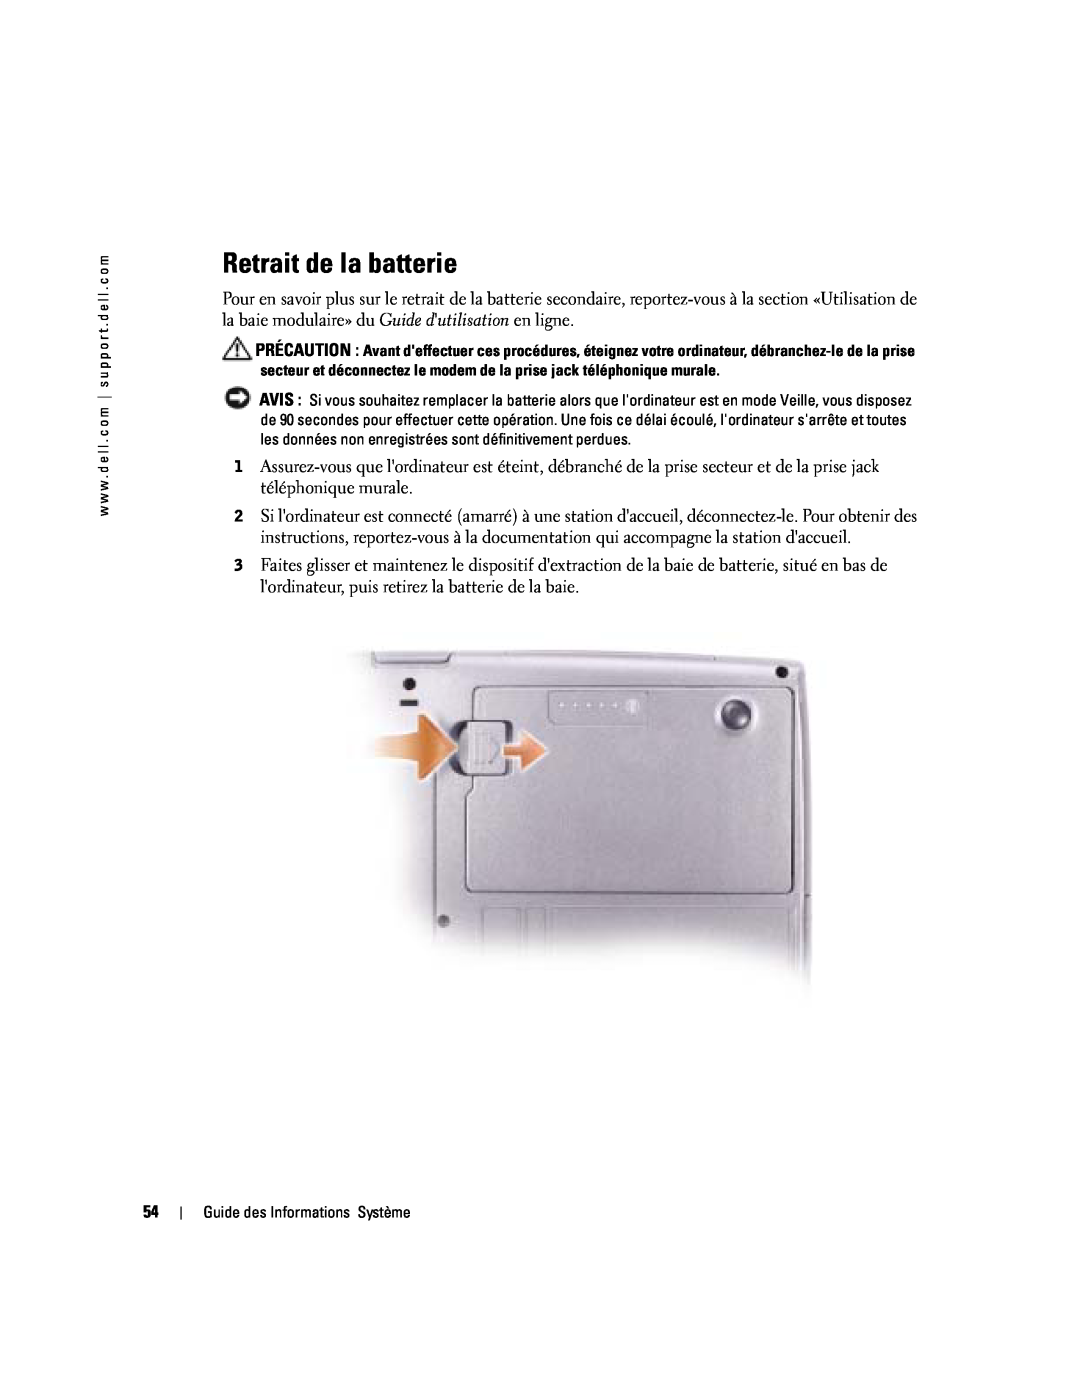 Dell D505 manual Retrait de la batterie 